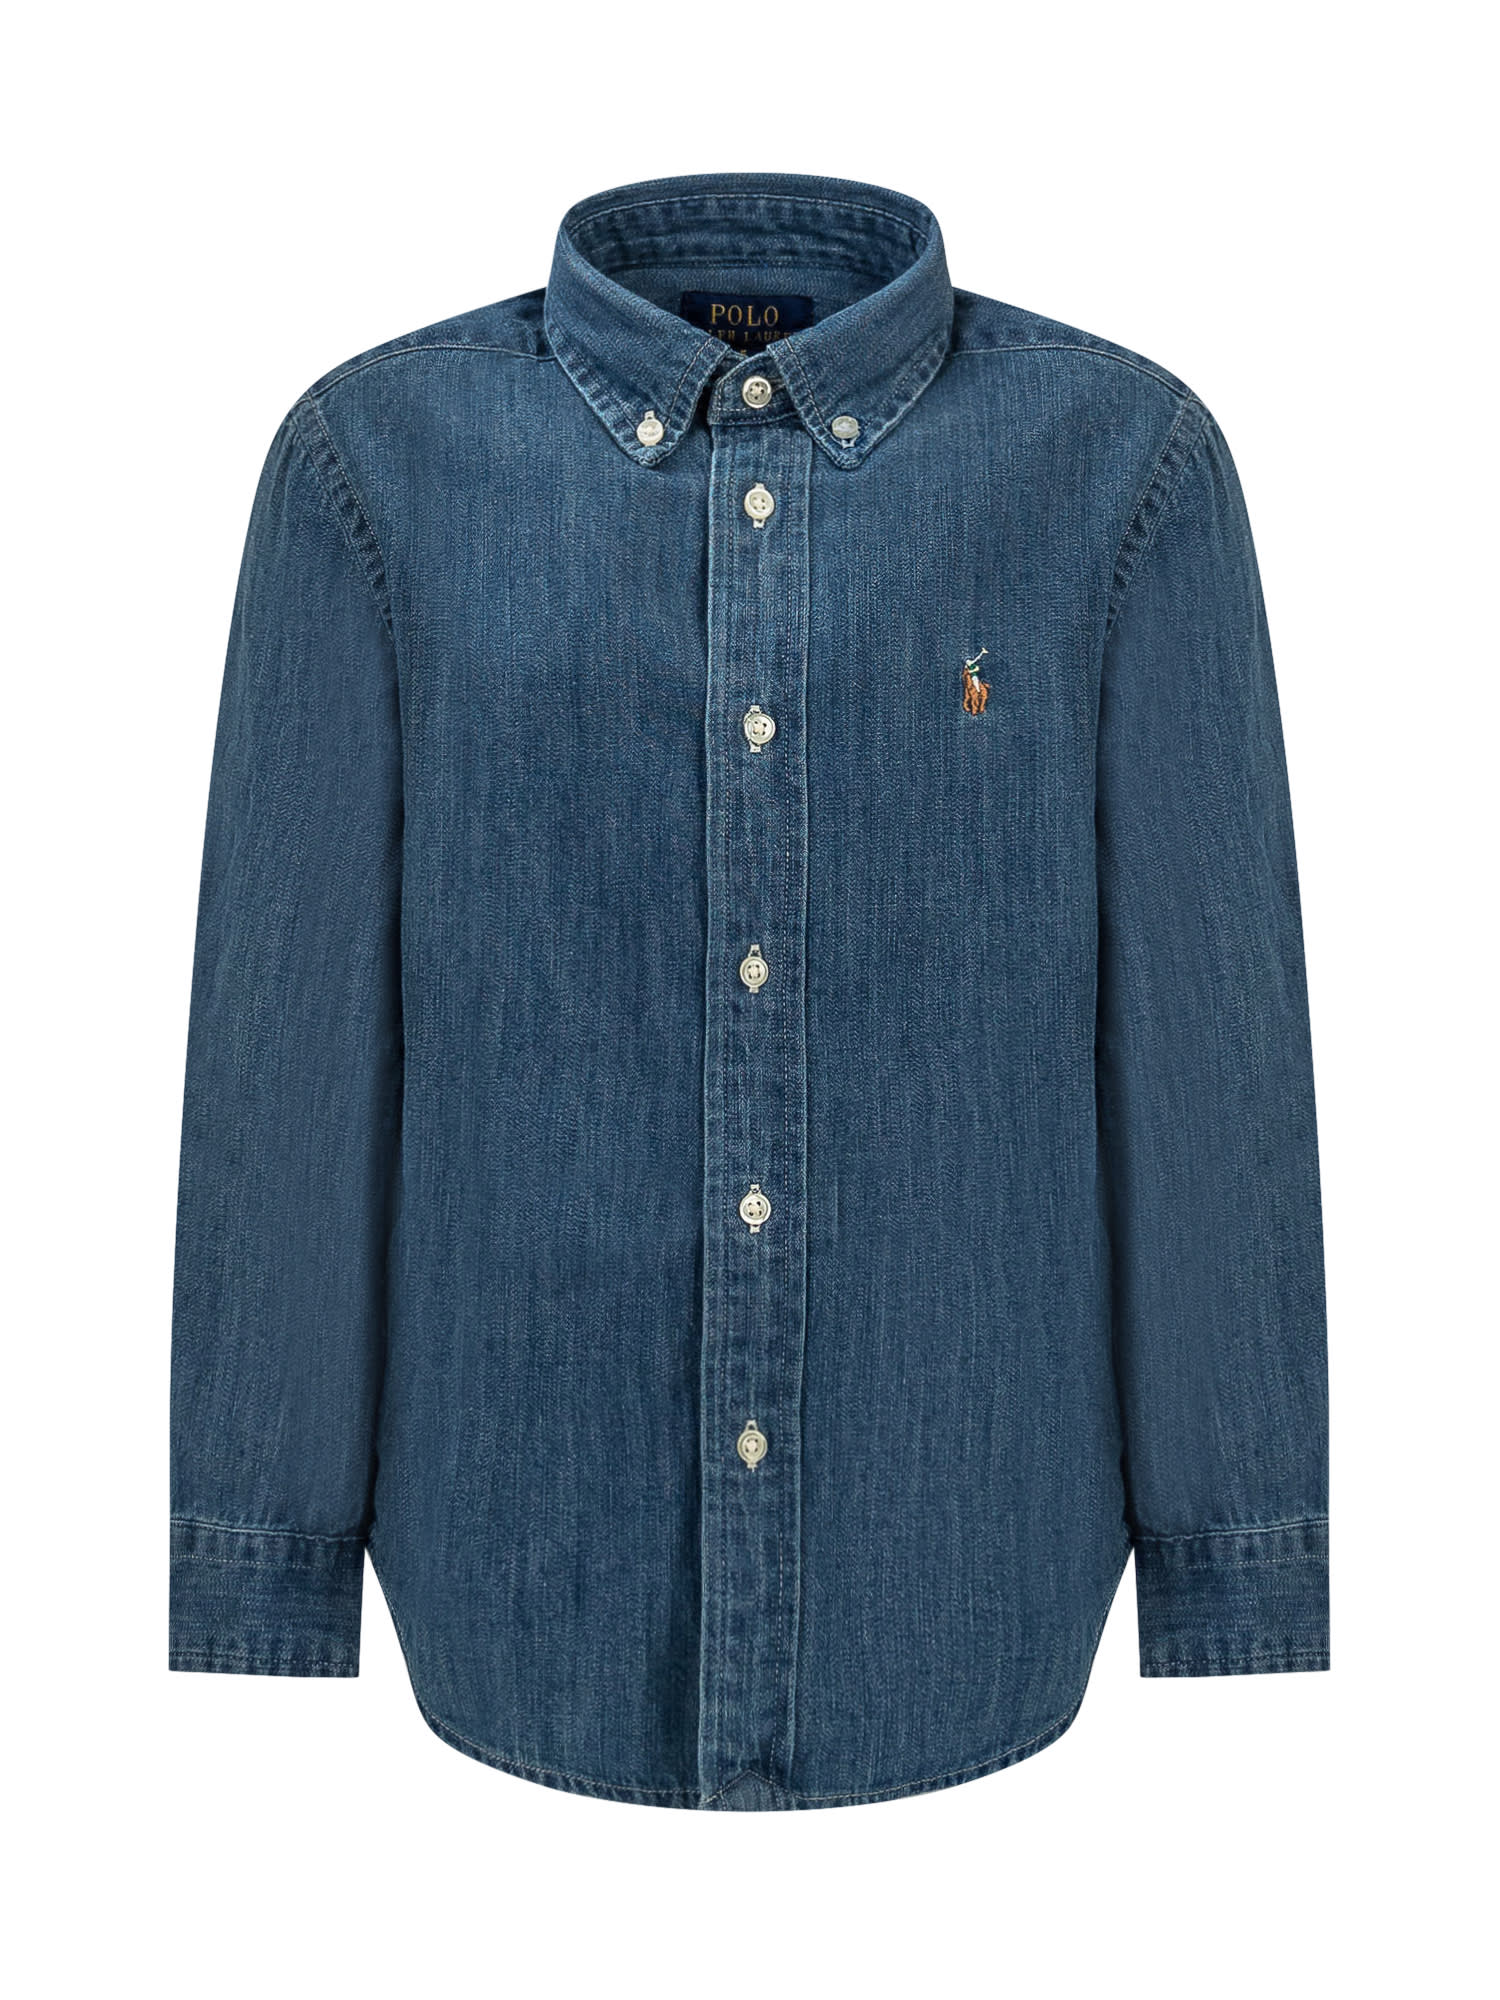 Polo Ralph Lauren Kids' Denim Shirt In Dk Blue